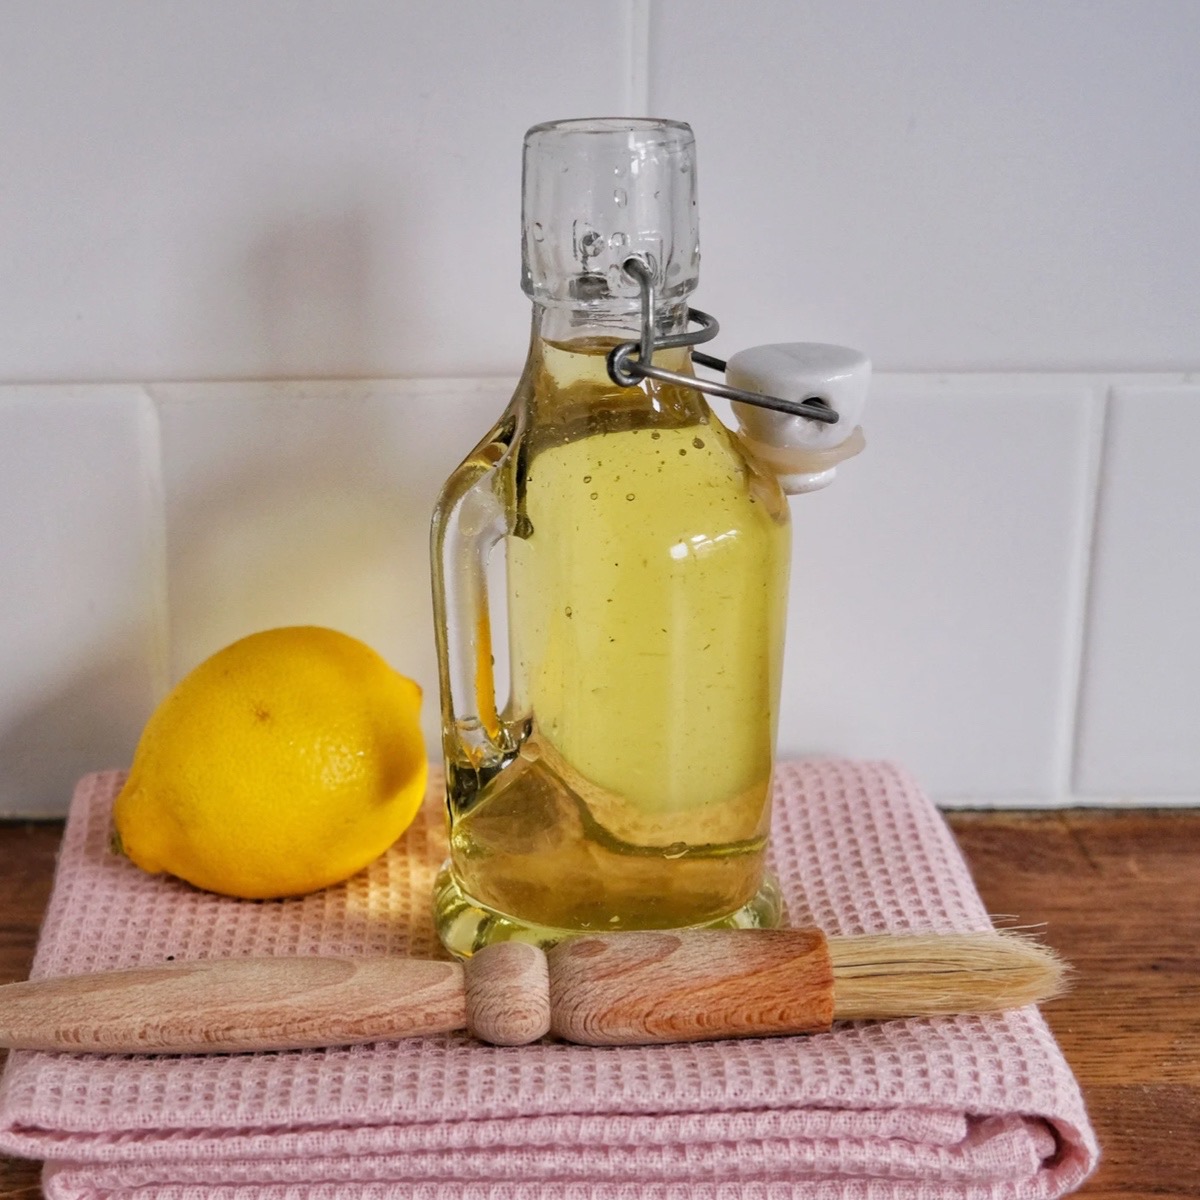 ricetta facile bagna per torte analcolica al limone